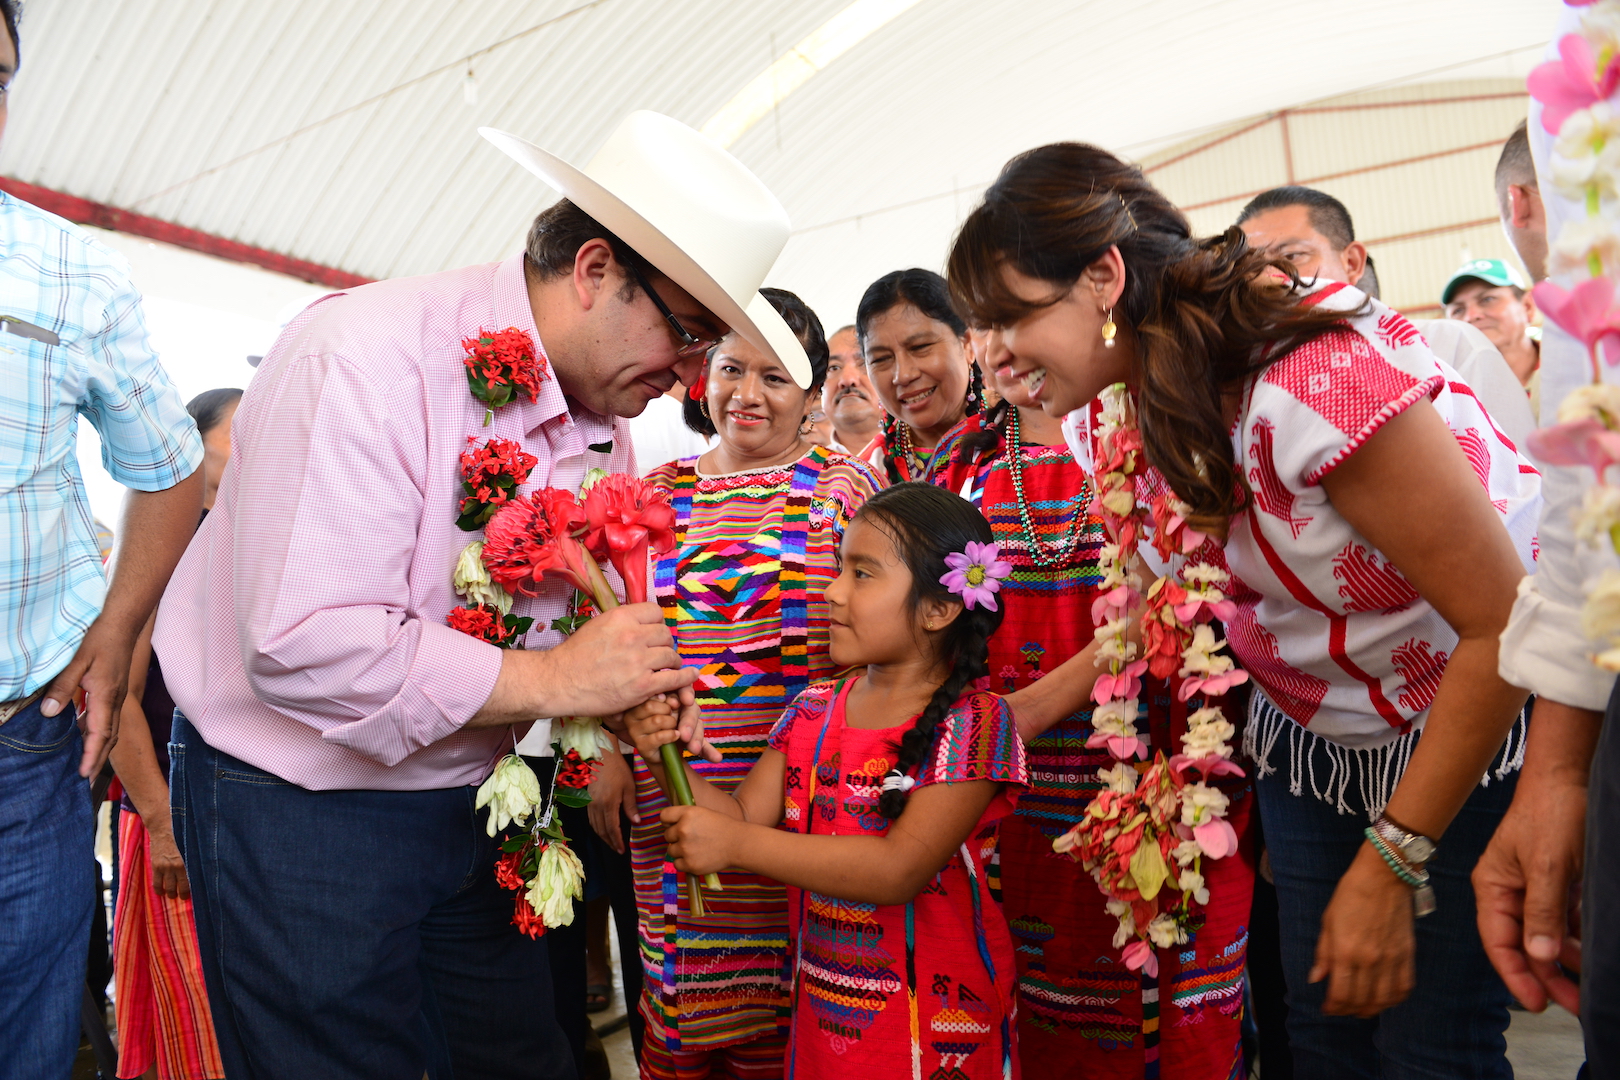 Los pueblos indígenas son la identidad de Veracruz: Javier Duarte